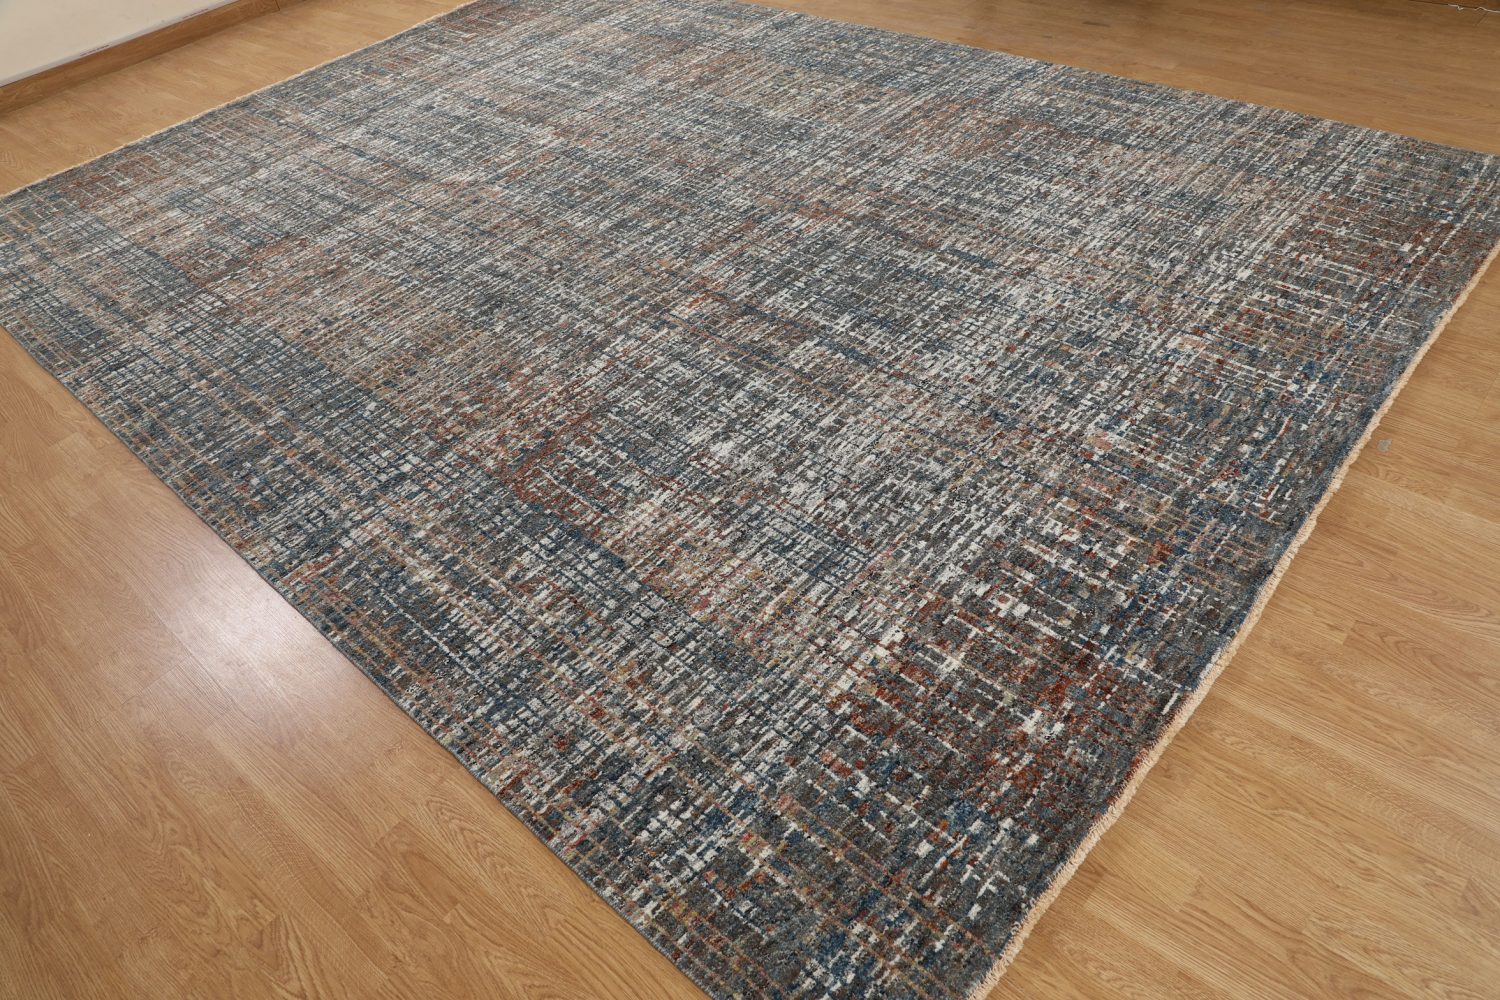 Amazon 8' x 10' 2" Handmade Area rug